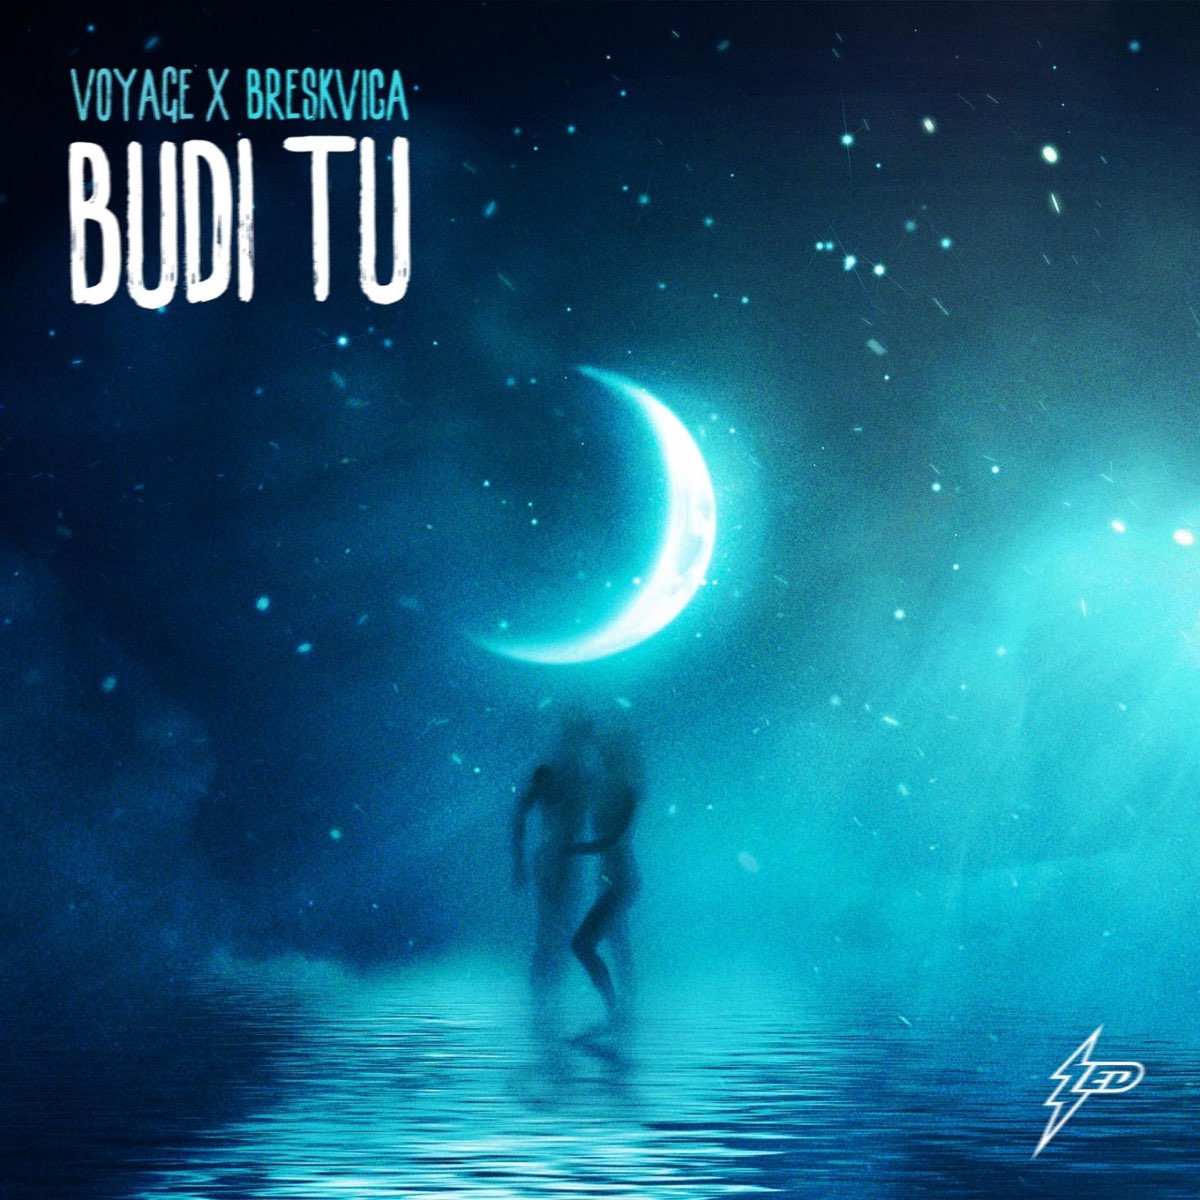 Voyage featuring Breskvica — Budi Tu cover artwork